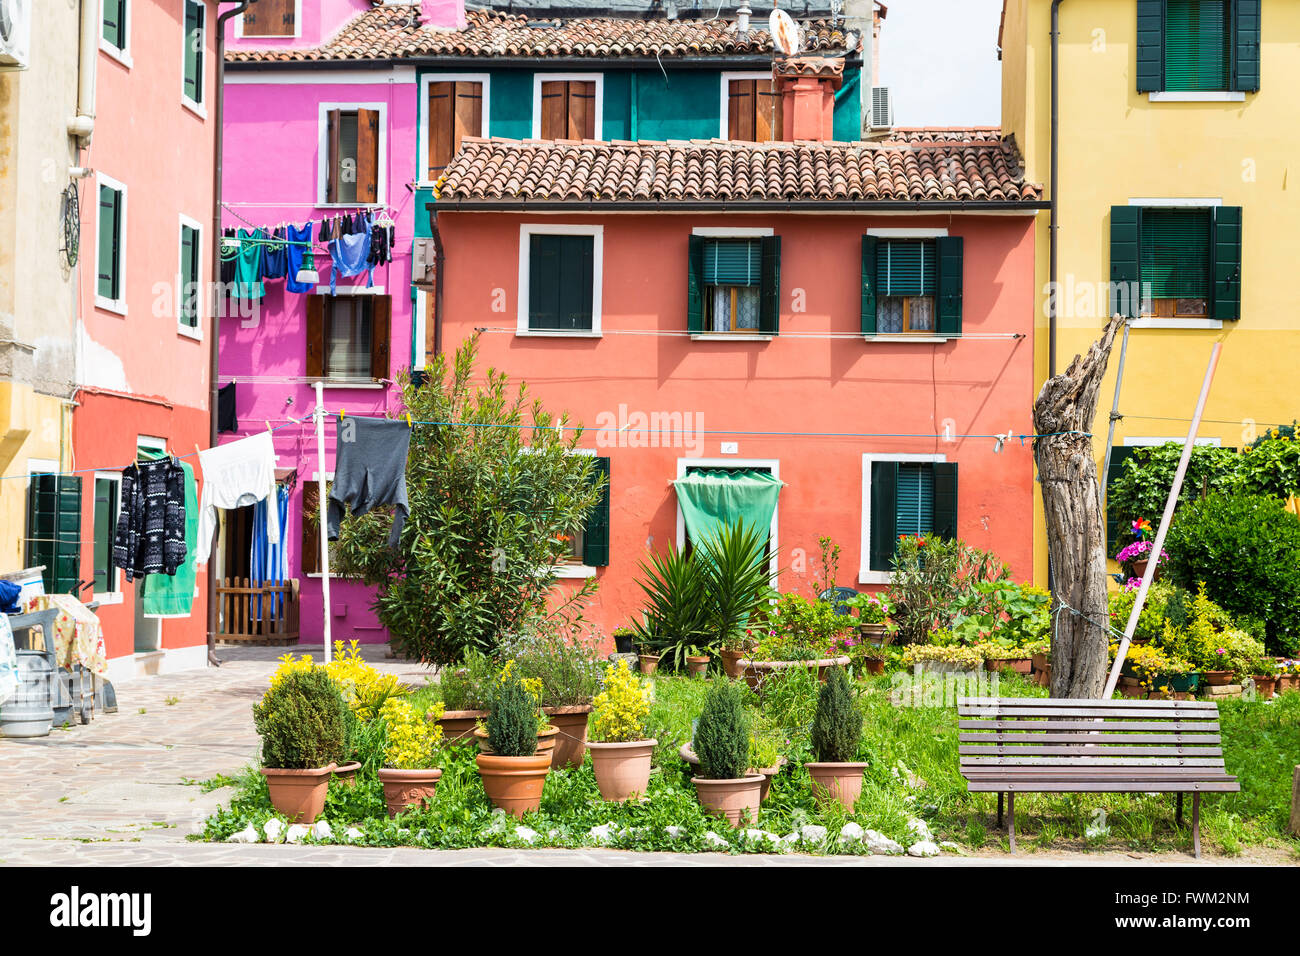 Les lavoirs le séchage dans le milieu de la cour entre les maisons colorées de Burano, l'île de Venise Banque D'Images